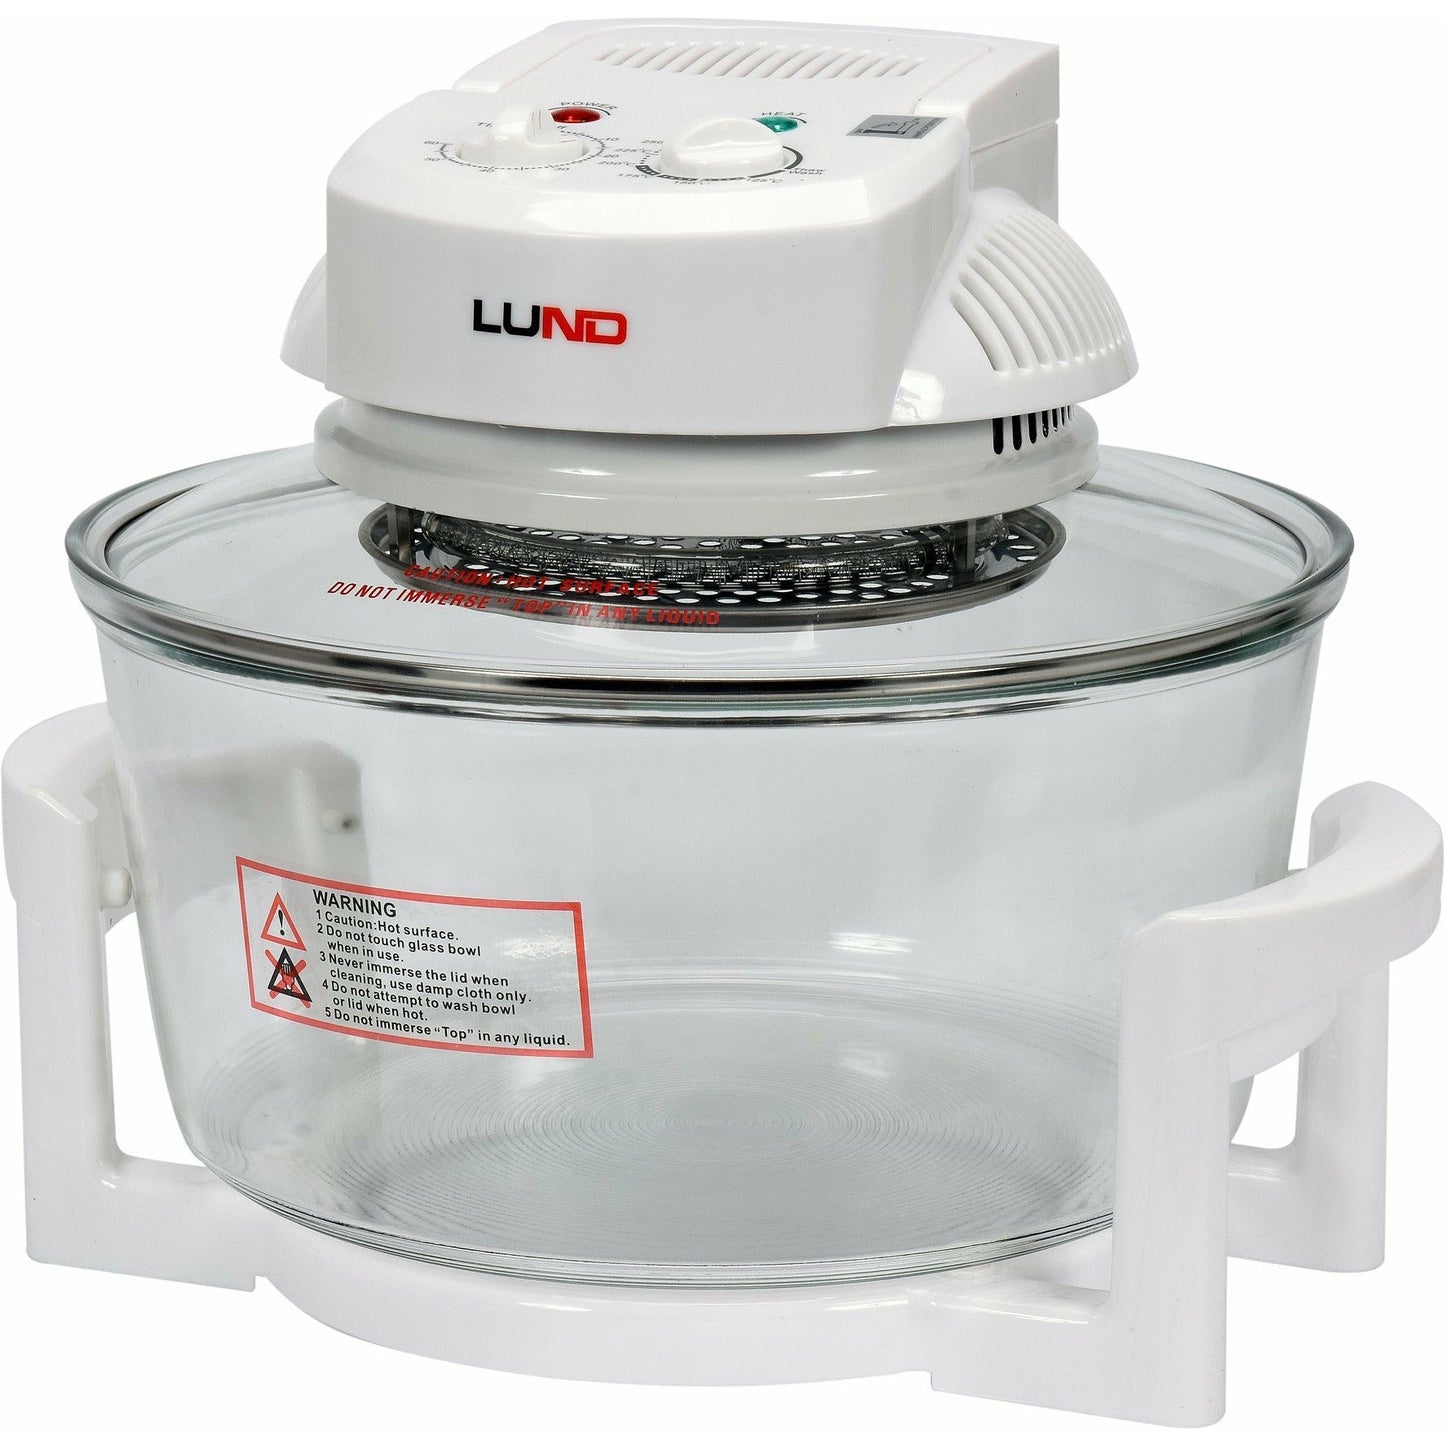 LUND Professional halogeen oven heteluchtoven incl gratis 8-delige accessoires set 1400W 12+5 liter